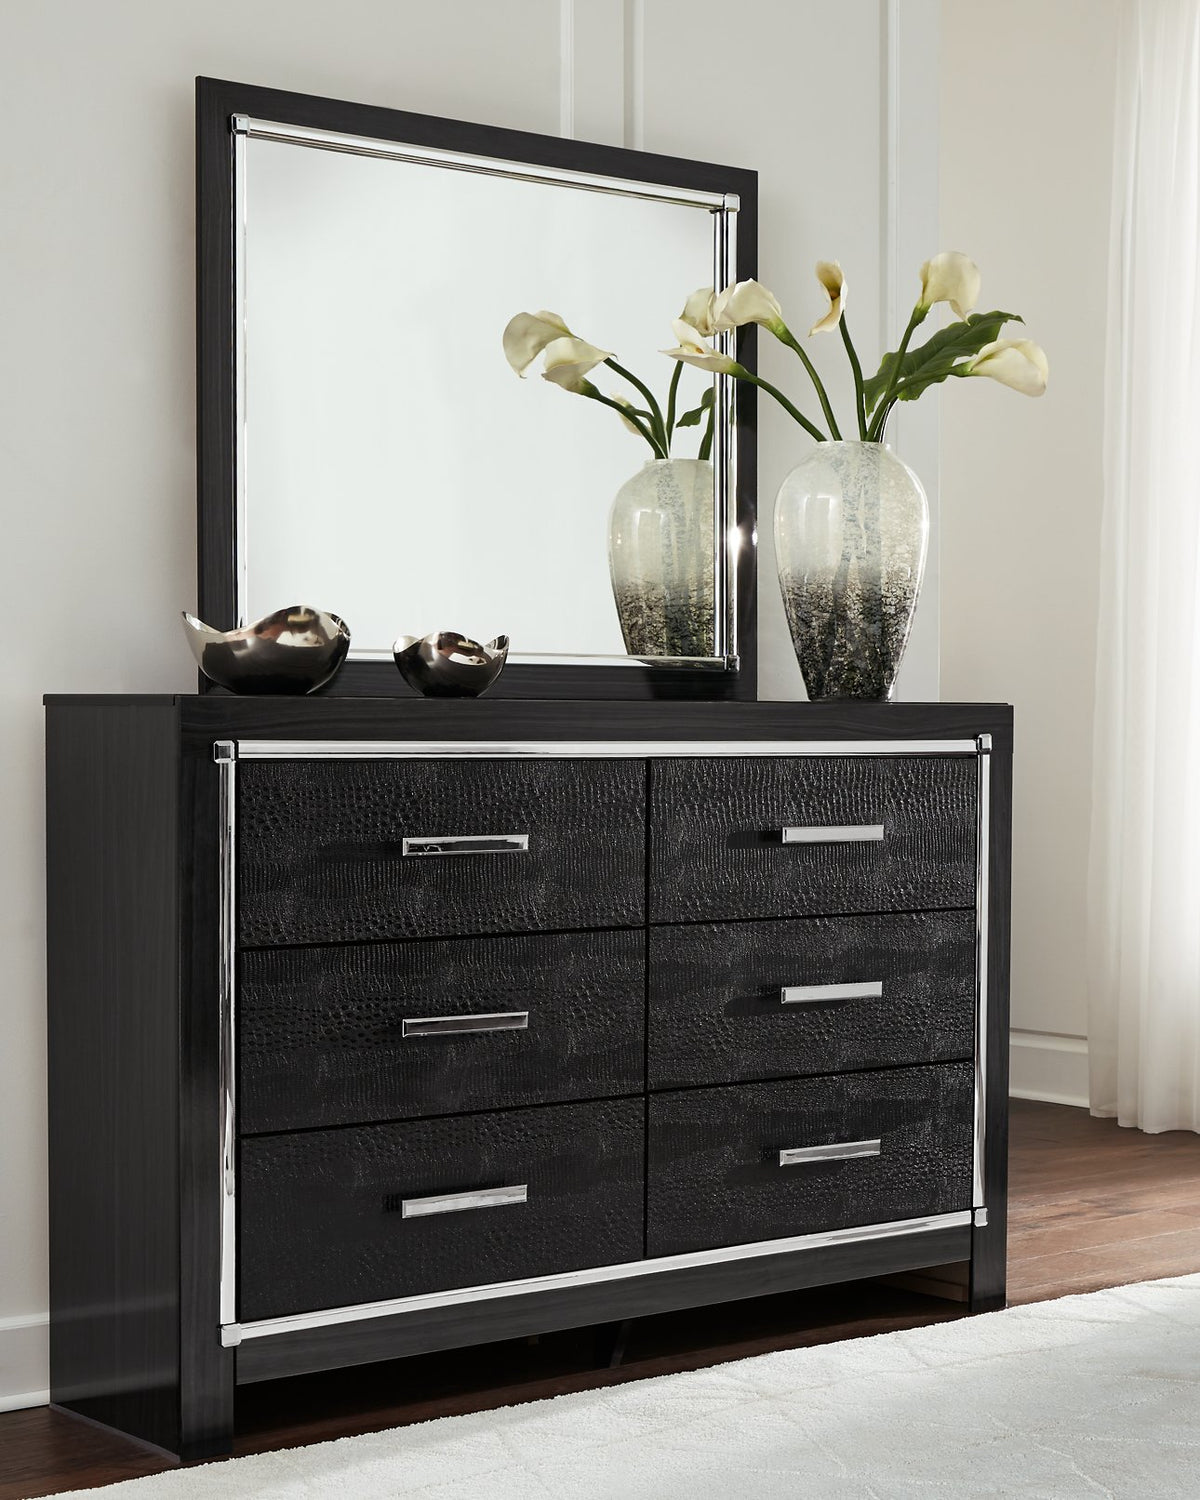 Kaydell Dresser and Mirror - Half Price Furniture